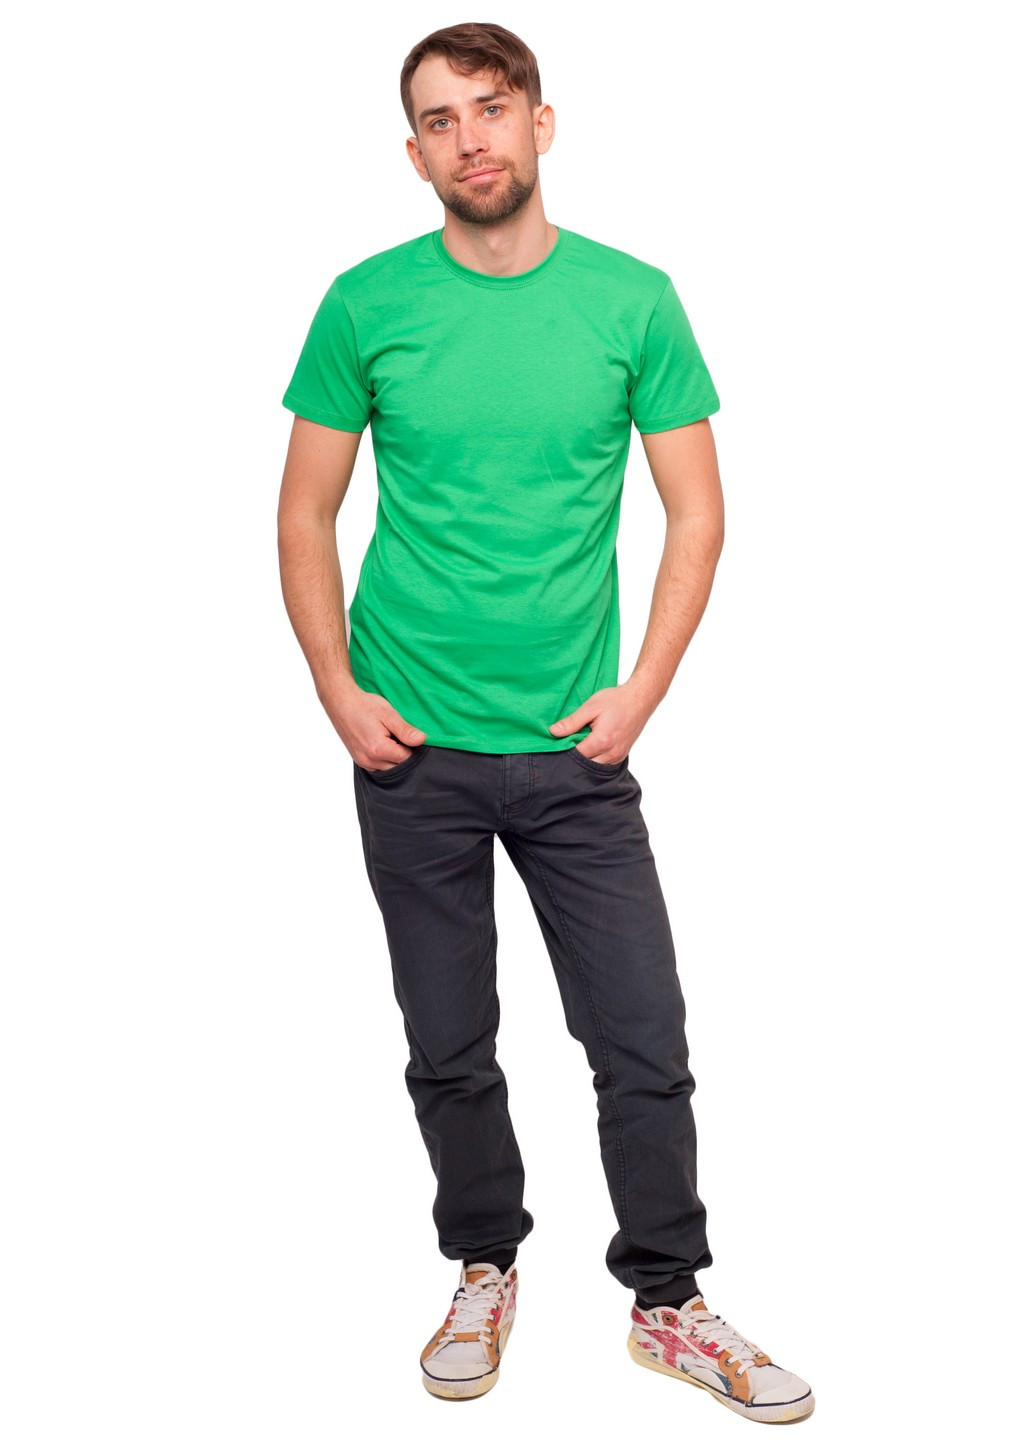 Зеленая футболка мужская Наталюкс 12-1338